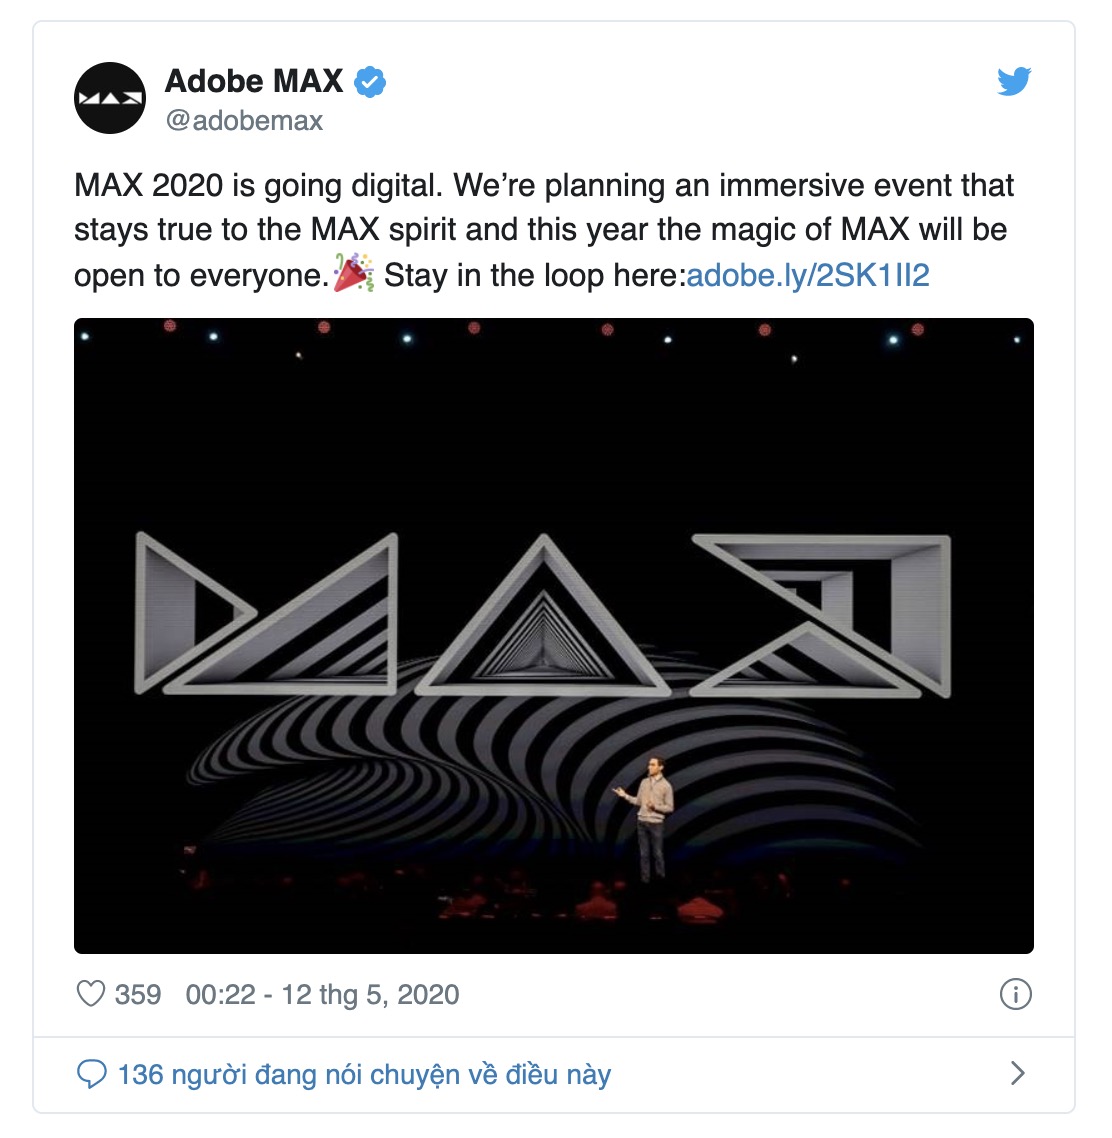 Hội nghị sáng tạo Adobe MAX 2020 năm nay sẽ tổ chức trực tuyến